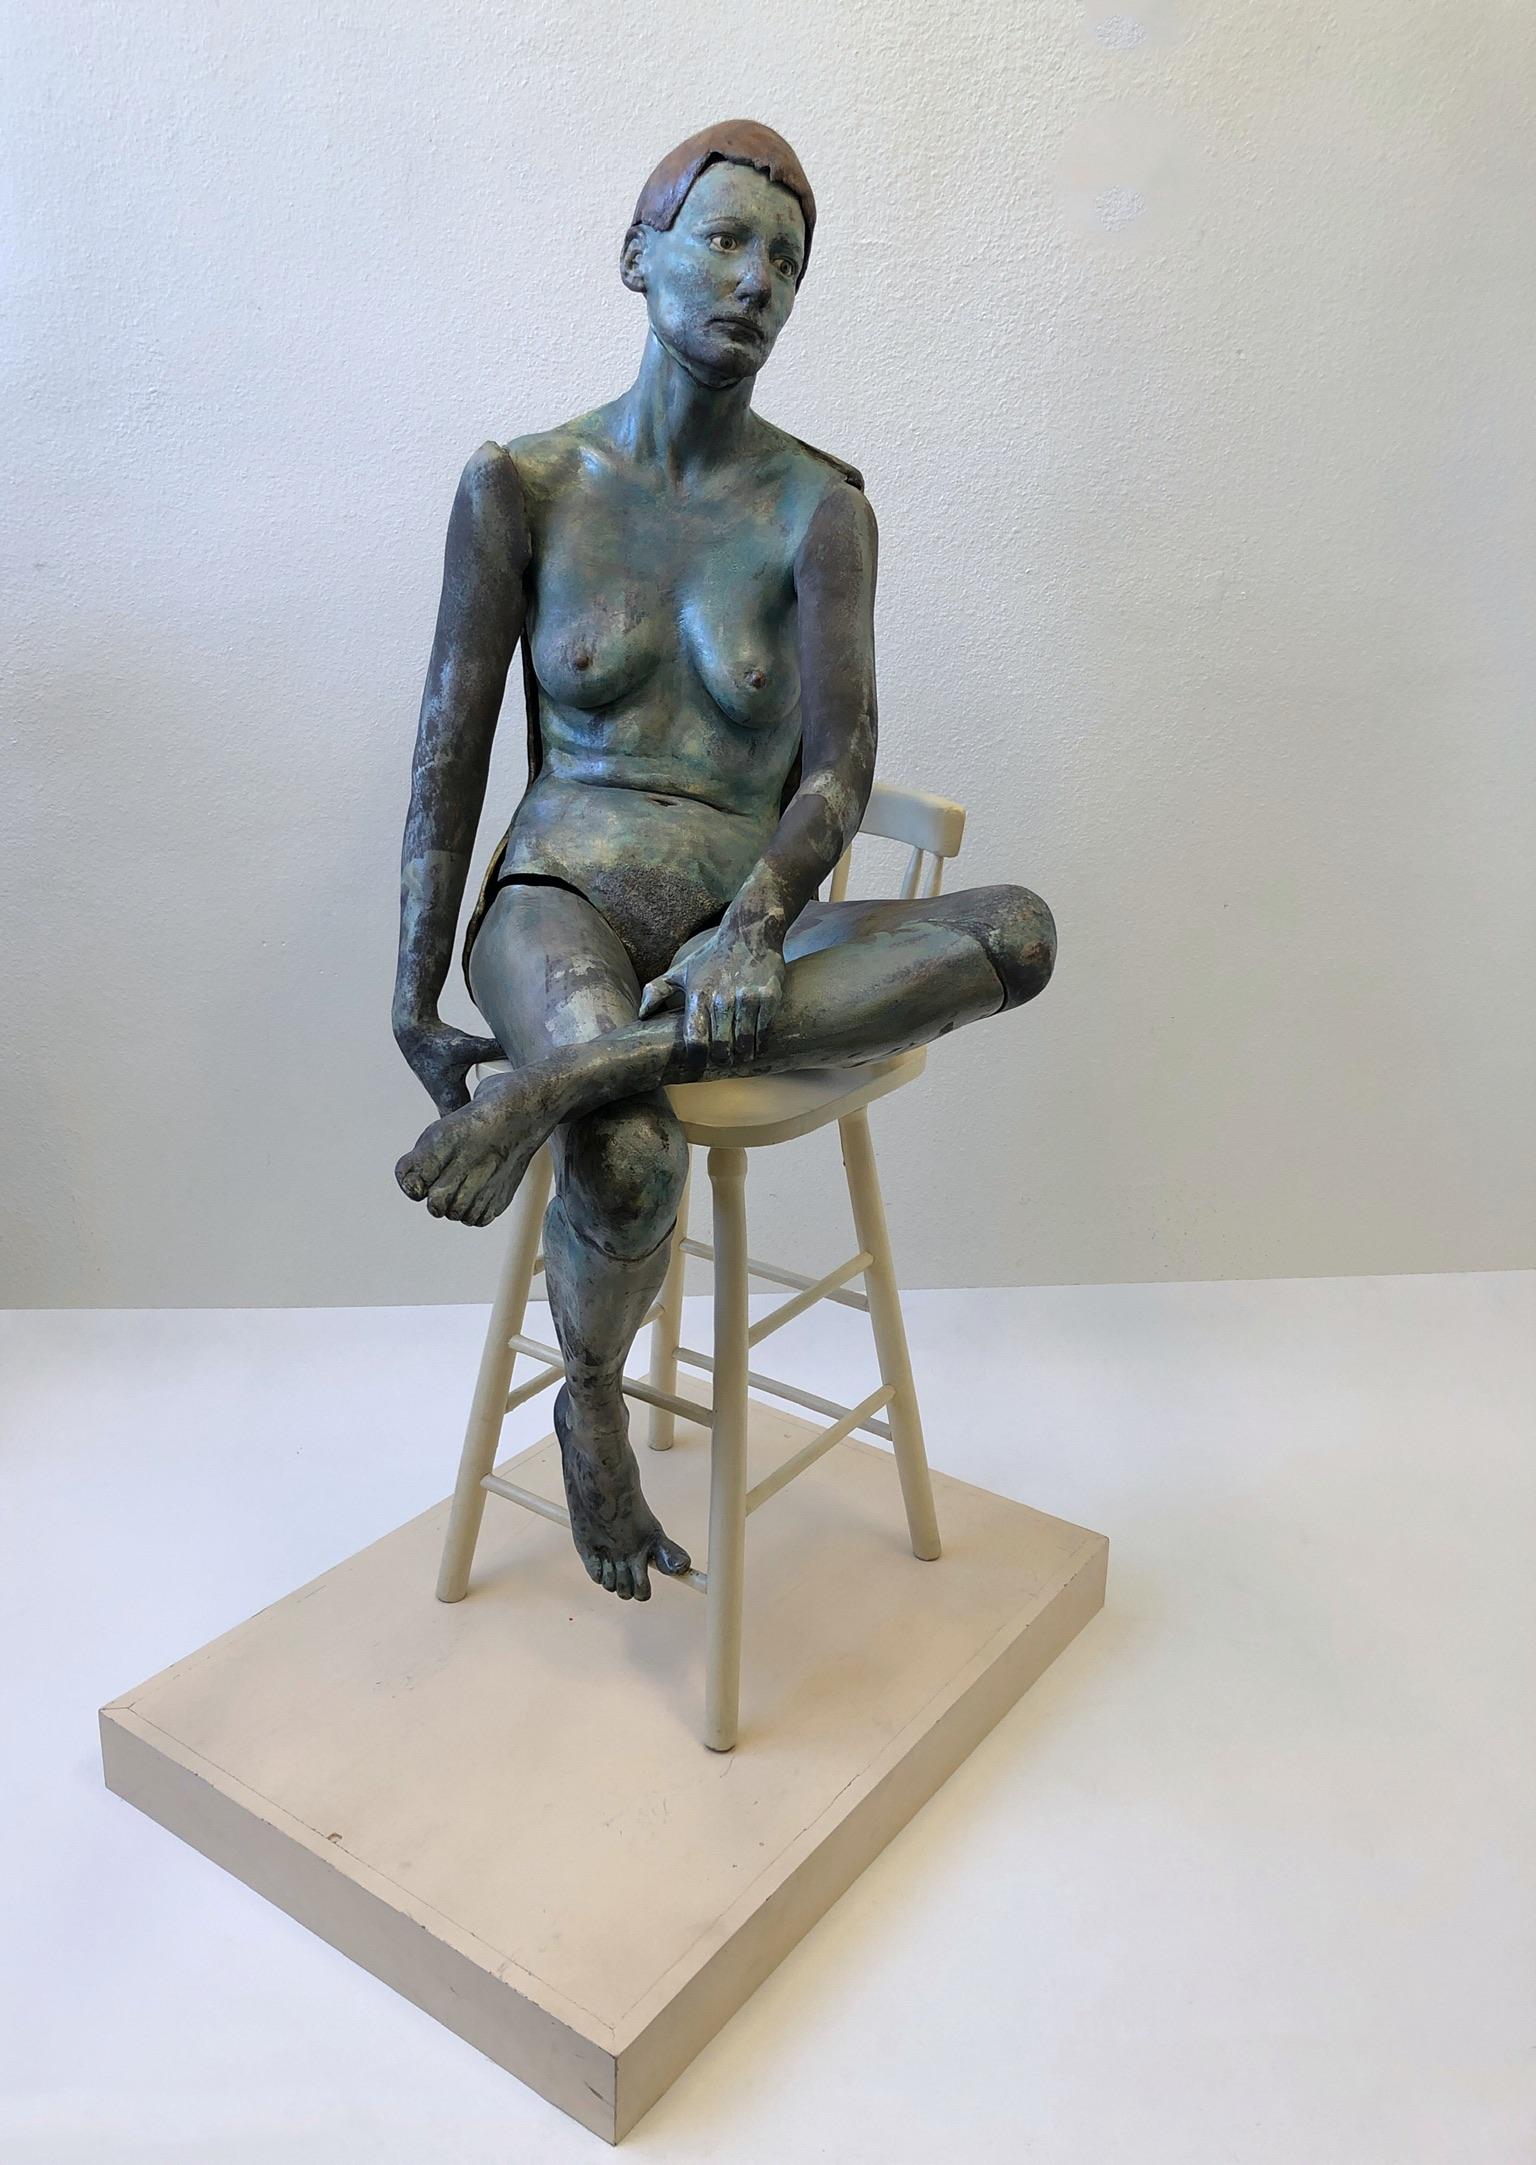 Une spectaculaire sculpture féminine nue en céramique Raku des années 1980, réalisée par Eva Stettner. La sculpture féminine est constituée de sections de céramique émaillée à basse température, la chaise est en bois peint. Les deux bras et une